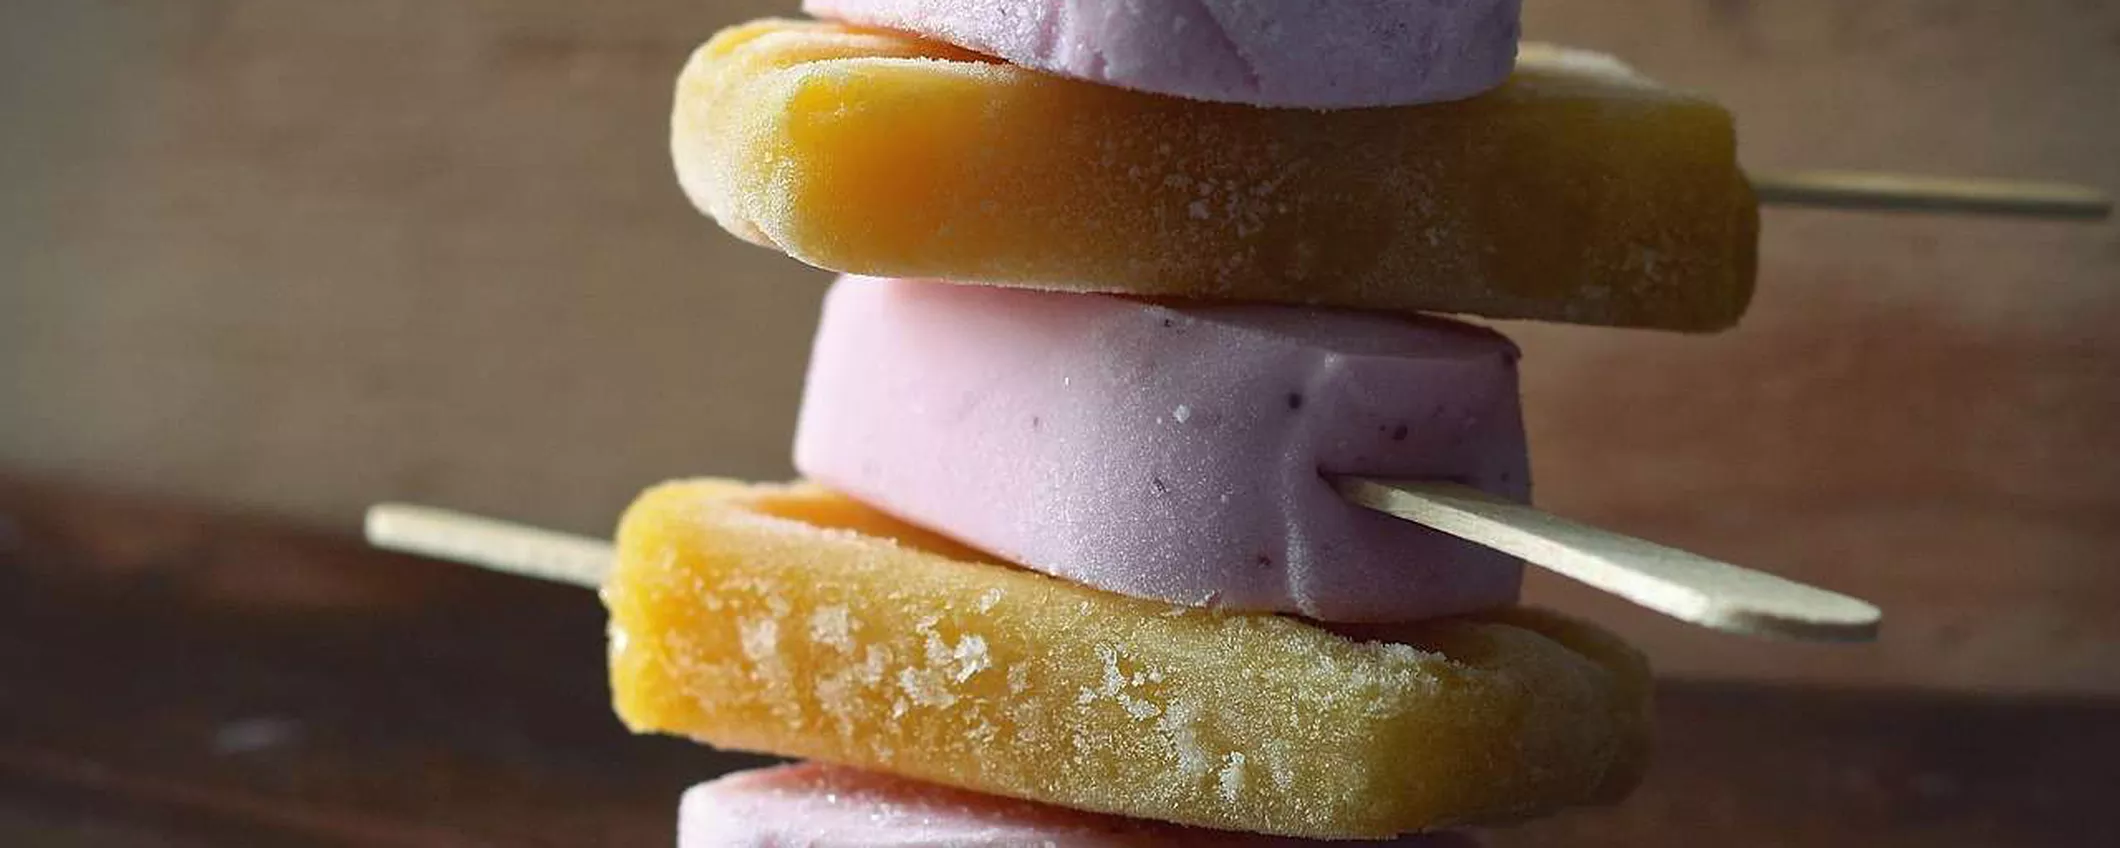 Migliore gelatiera 2023: guida alle macchine per gelato autorefrigeranti